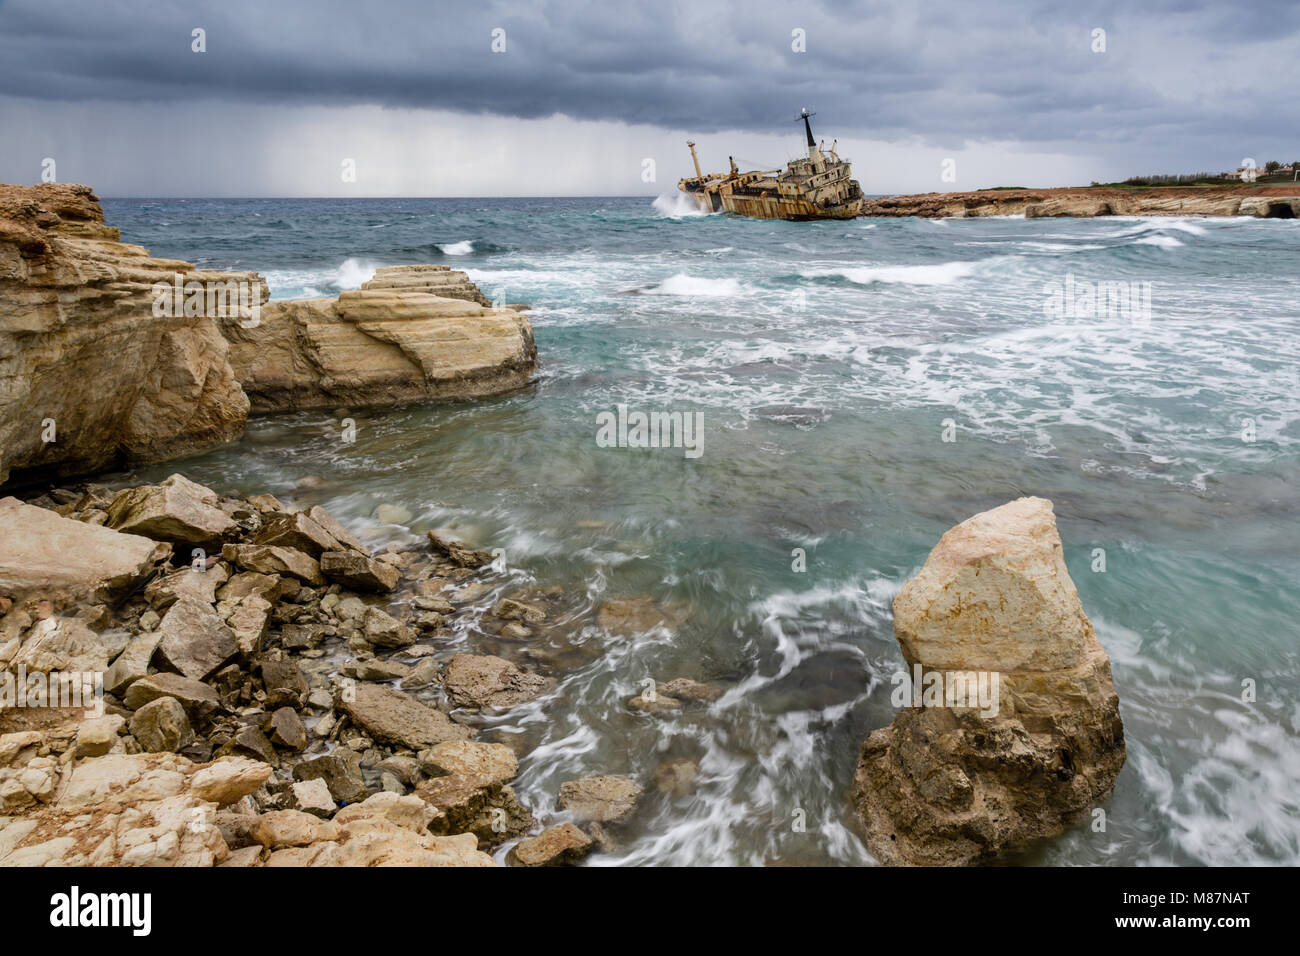 Schiffbruch der Edro III bei Seacaves, einem Gebiet von außergewöhnlicher natürlicher Schönheit in der Nähe von Coral Bay/Peiya, Zypern. Stockfoto